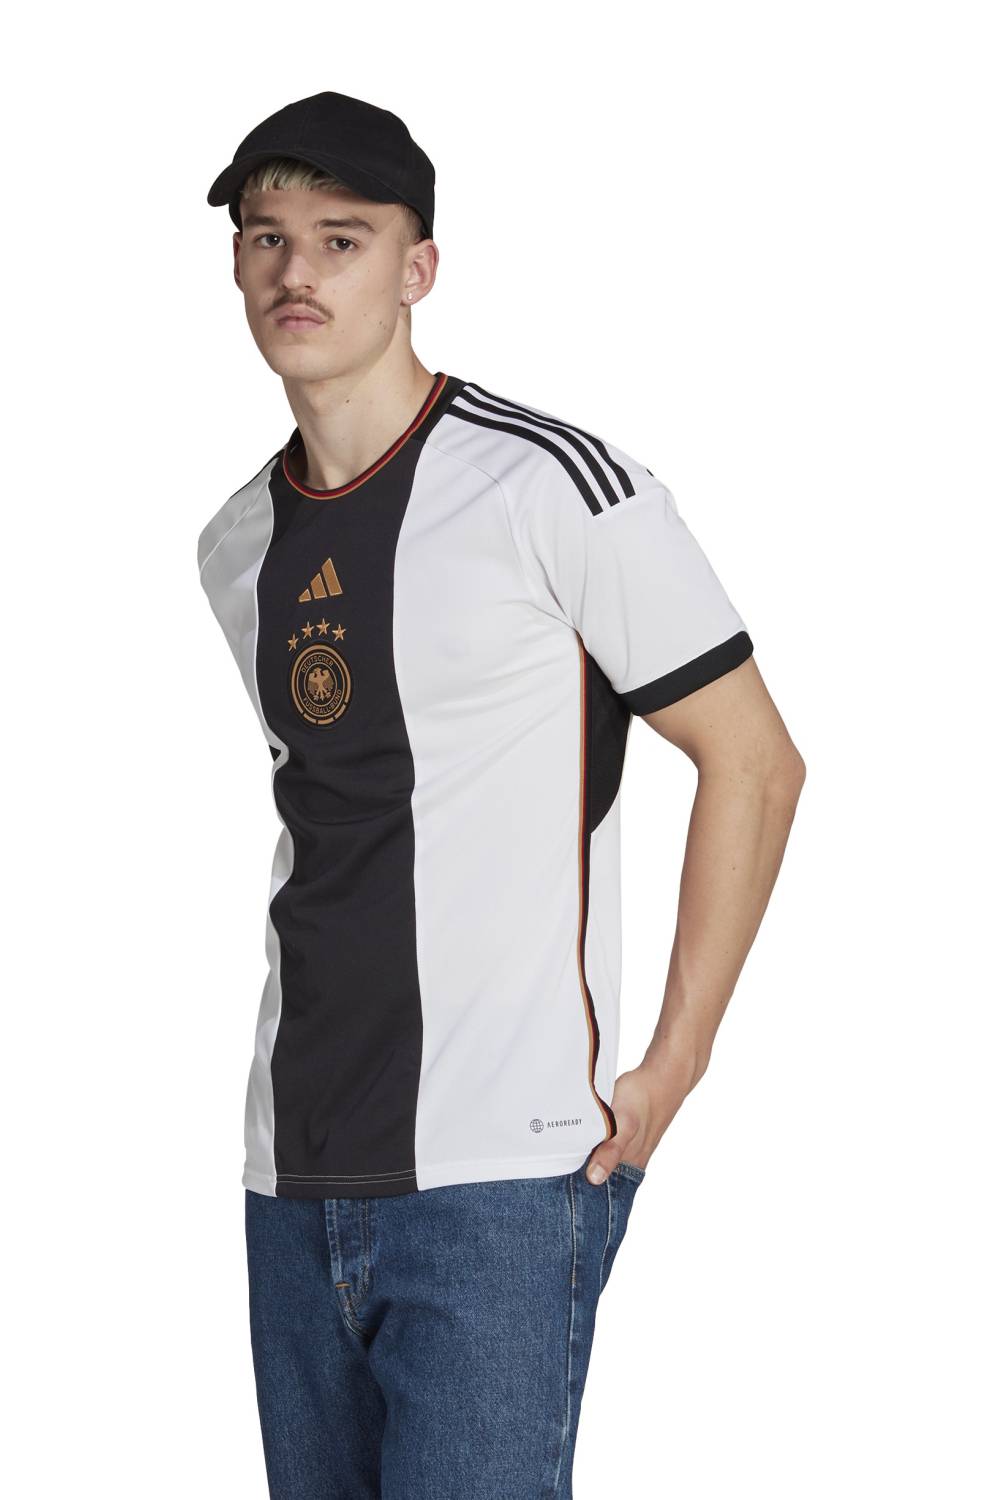 ADIDAS - Camiseta De Fútbol Alemania Local Hombre Adidas